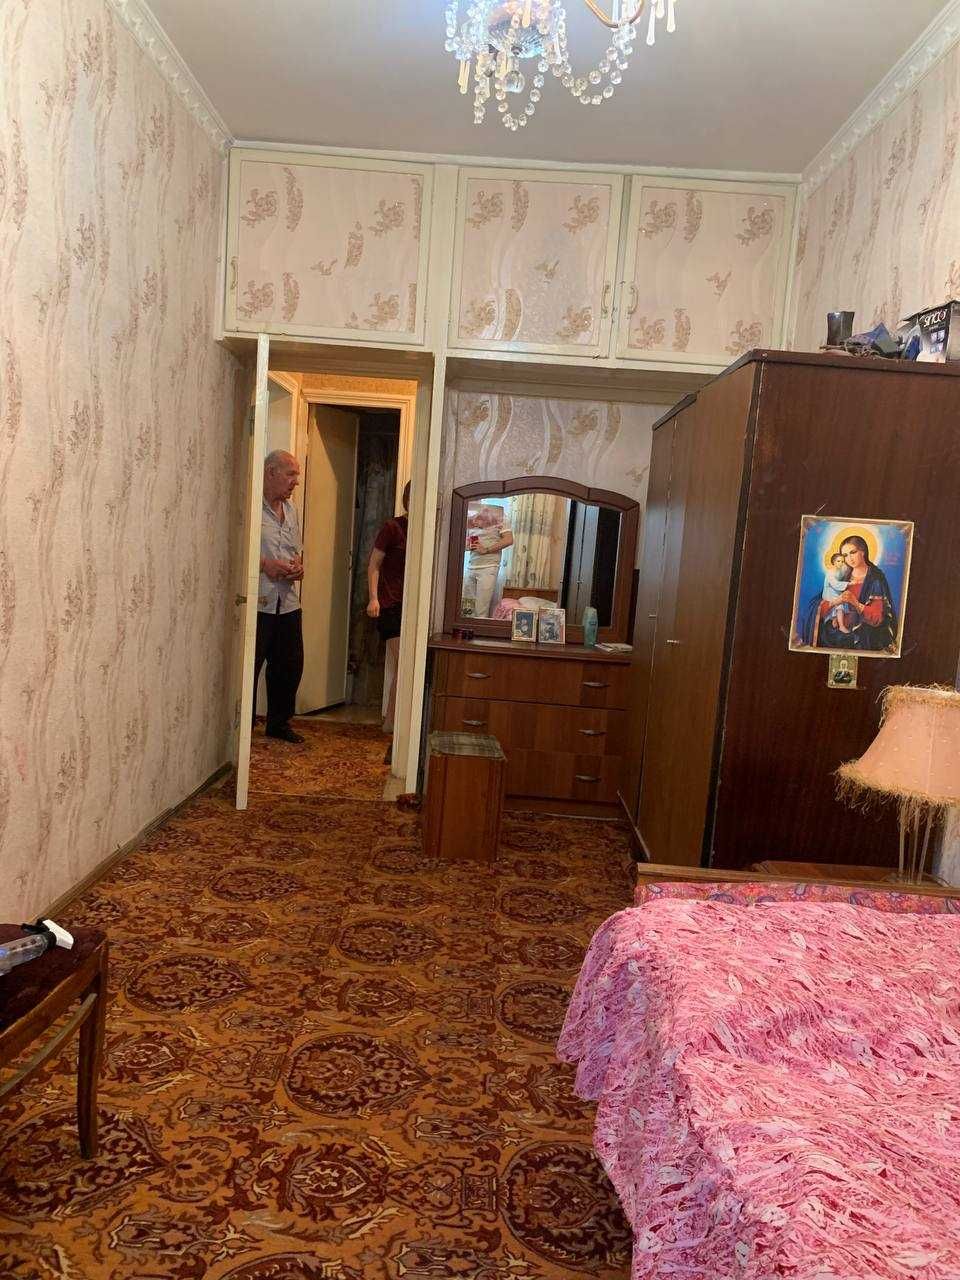 Продается квартира на Дубовой по хорошей цене 3в4/1/4 60 м²!